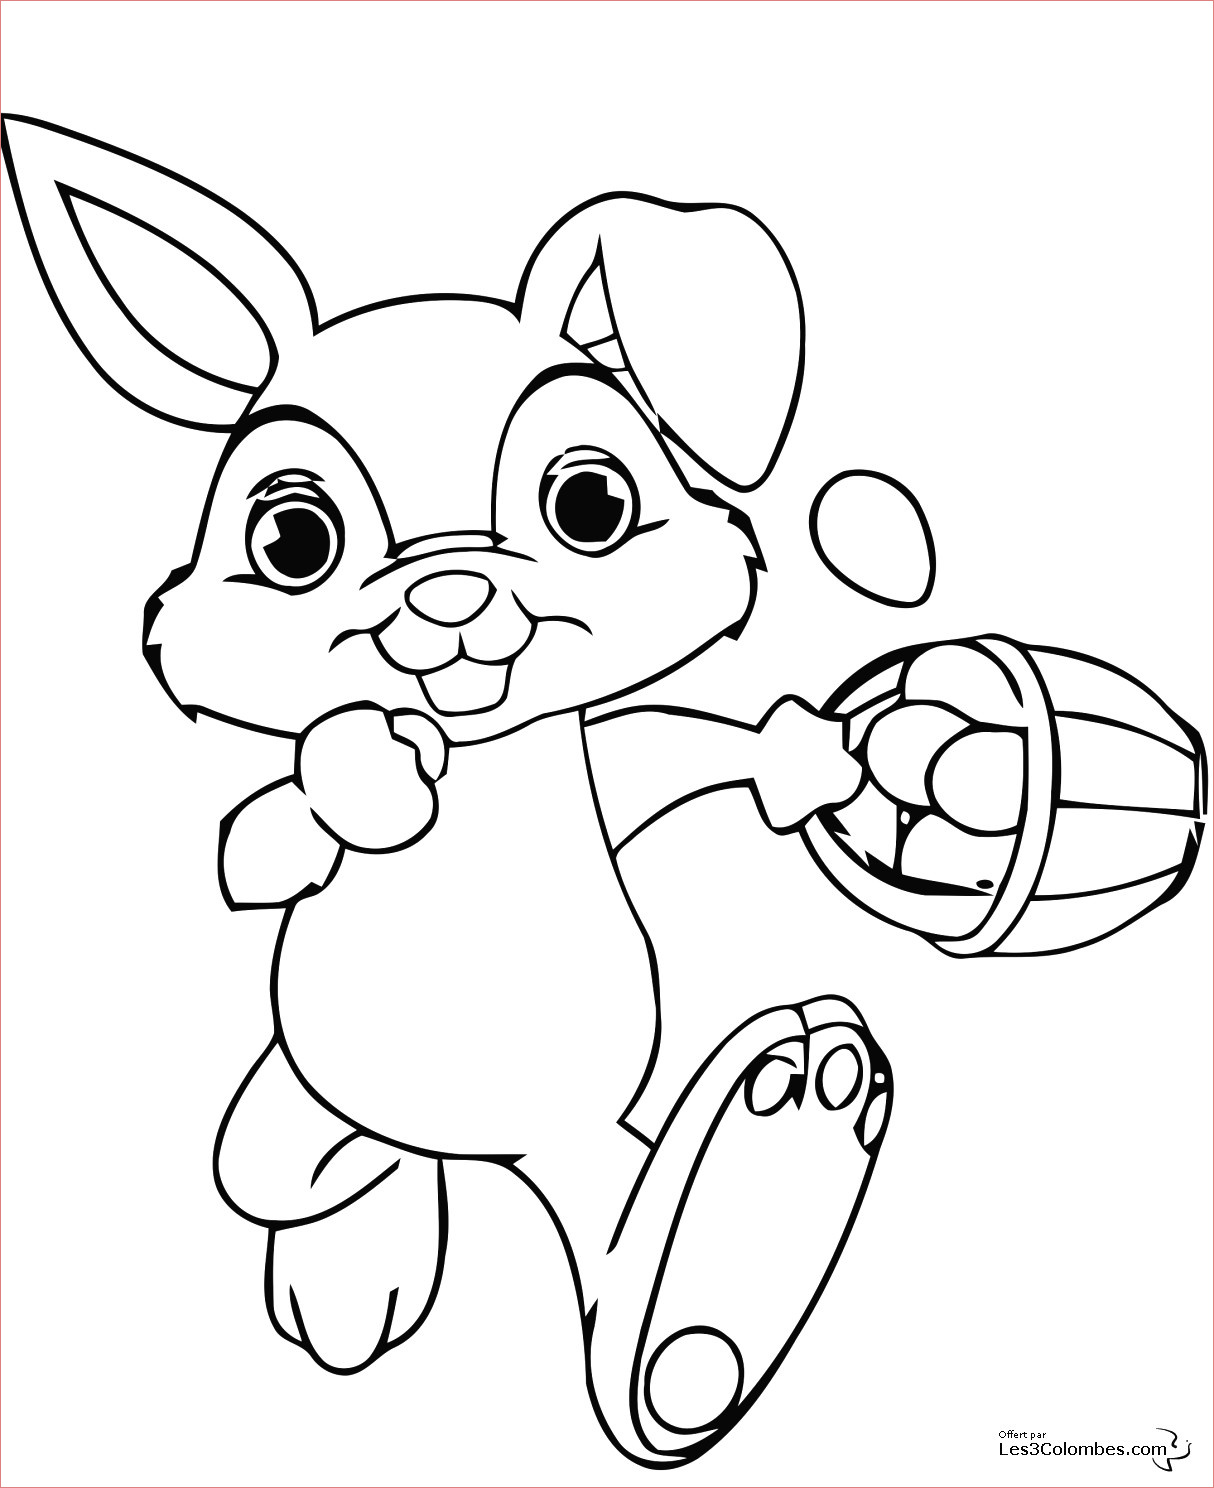 dessins de coloriage lapin imprimer toute dessin de lapin facile a avec dessins de coloriage lapin a imprimer toute dessin de lapin facile a dessiner et dessin lapin de paques facile 17 3508x2480px de